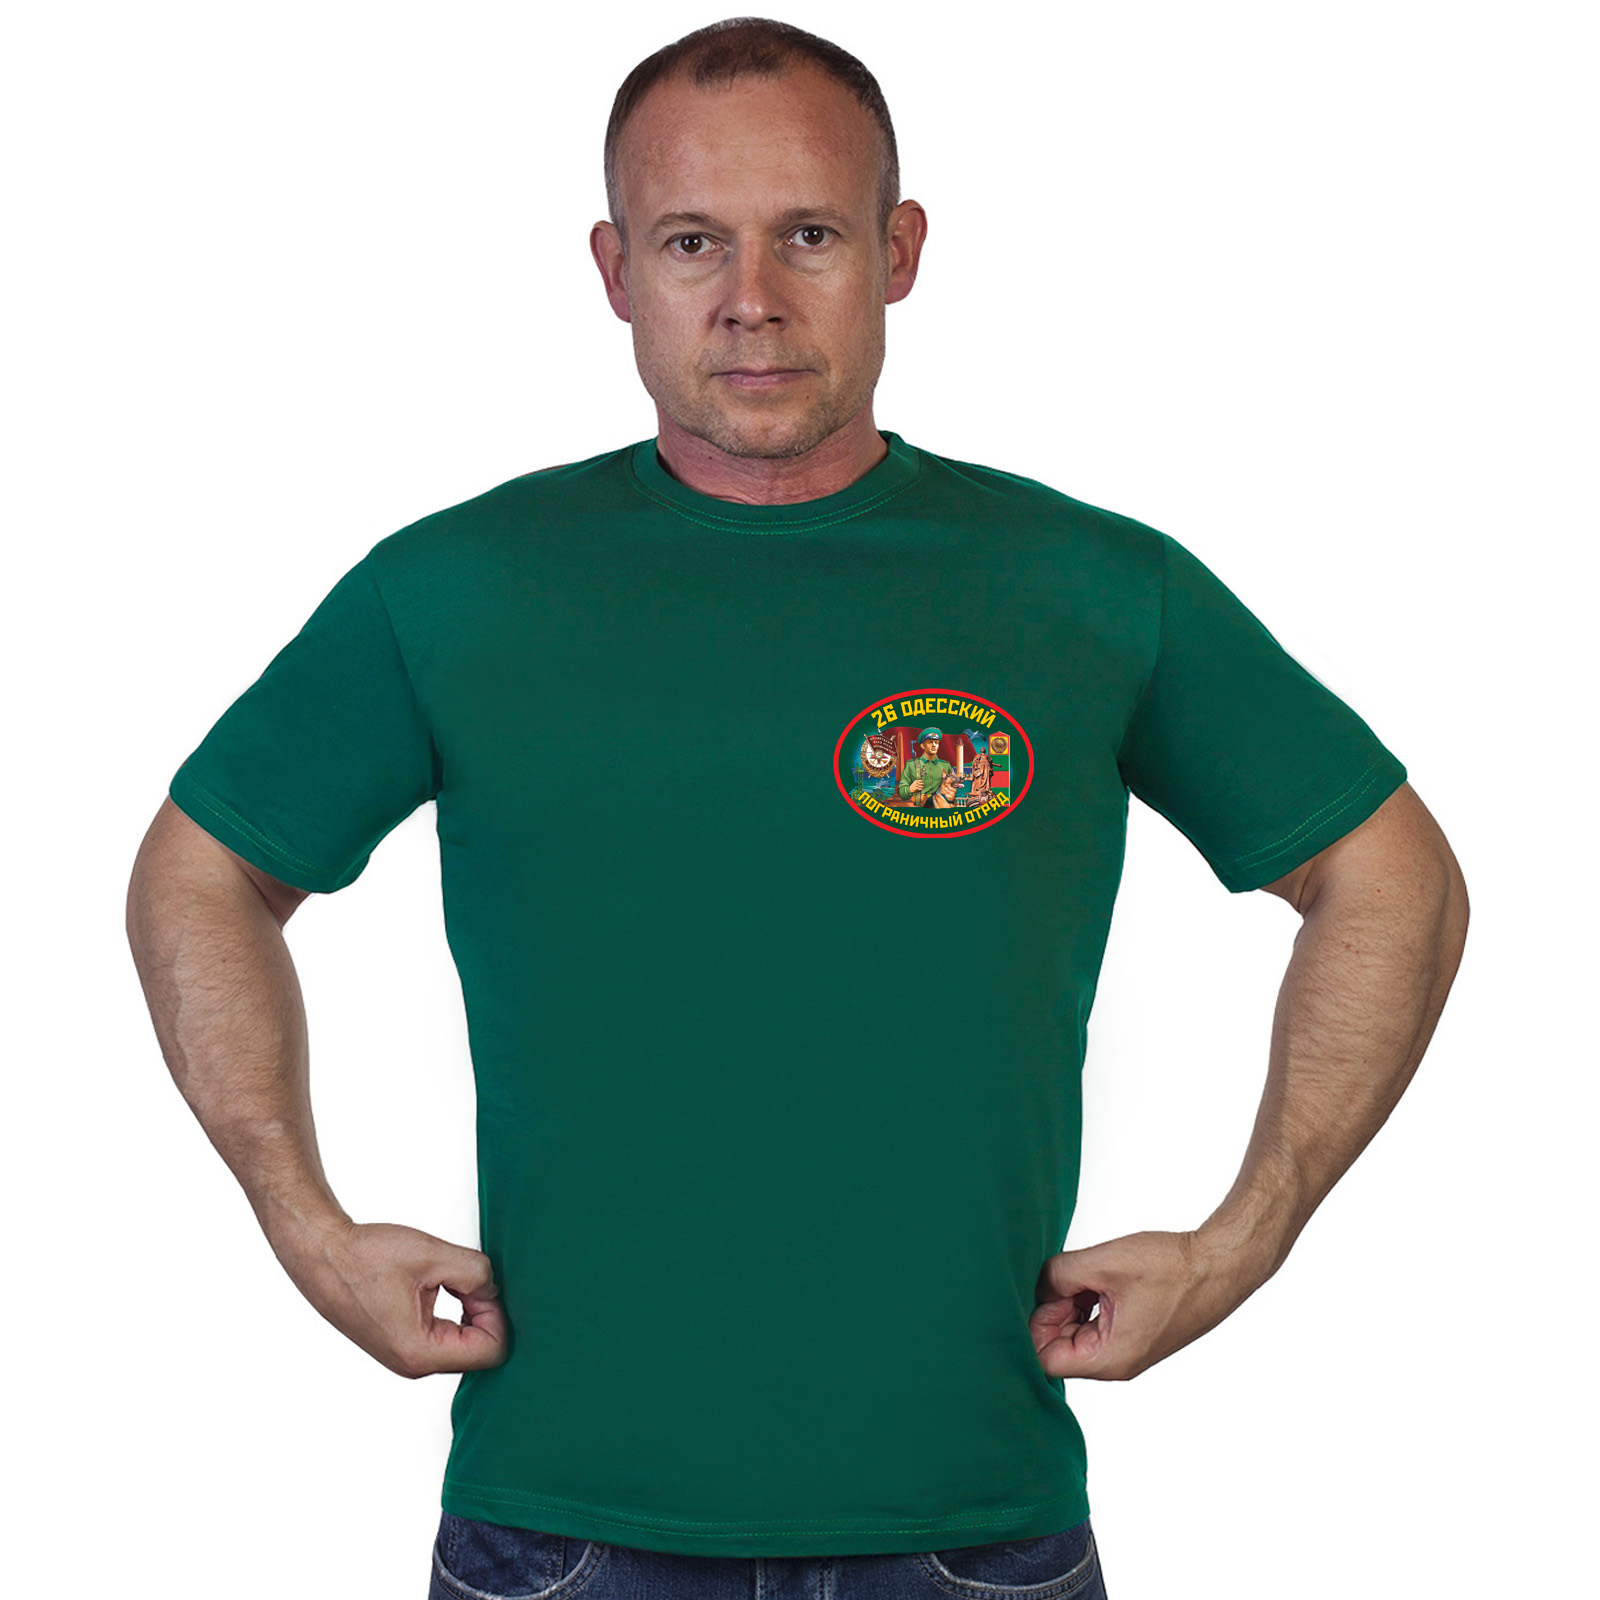 Мужские недорогие футболки 26-й Одесский пограничный отряд